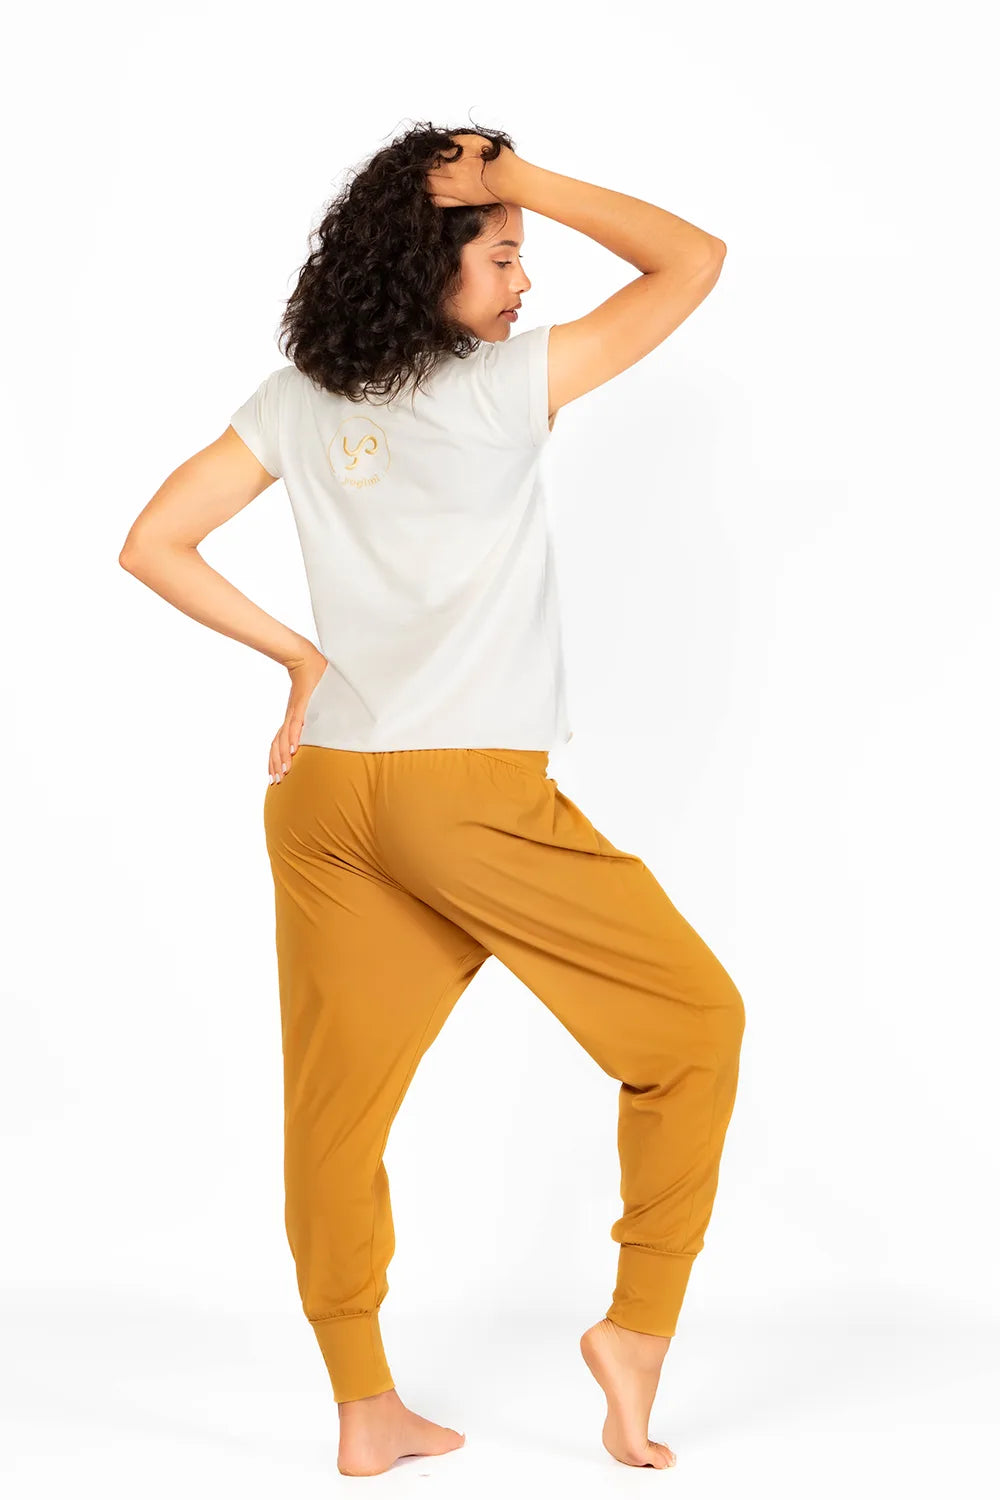 Tshirt Yoga Changed con bordado delantero con frase &quot;Yoga Changed my life&quot; . Color blanco Coconut Milk de Yogimi.